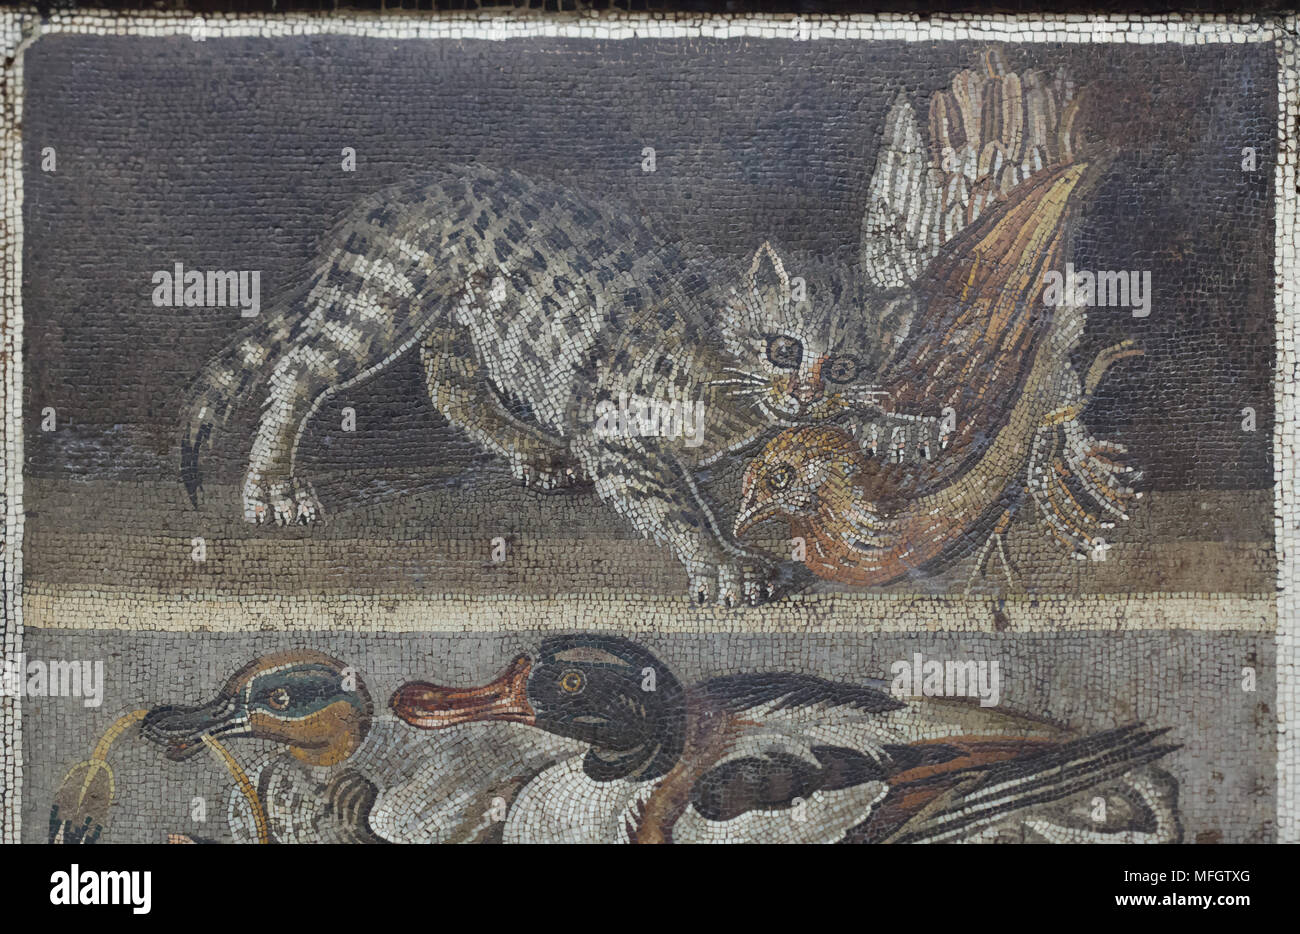 Katze angreift ein Rebhuhn in der römischen Mosaik aus der Casa del Fauno (Haus des Faun) in Pompeji dargestellt, nun im Nationalen Archäologischen Museum (Museo Archeologico Nazionale di Napoli) in Neapel, Kampanien, Italien. Stockfoto